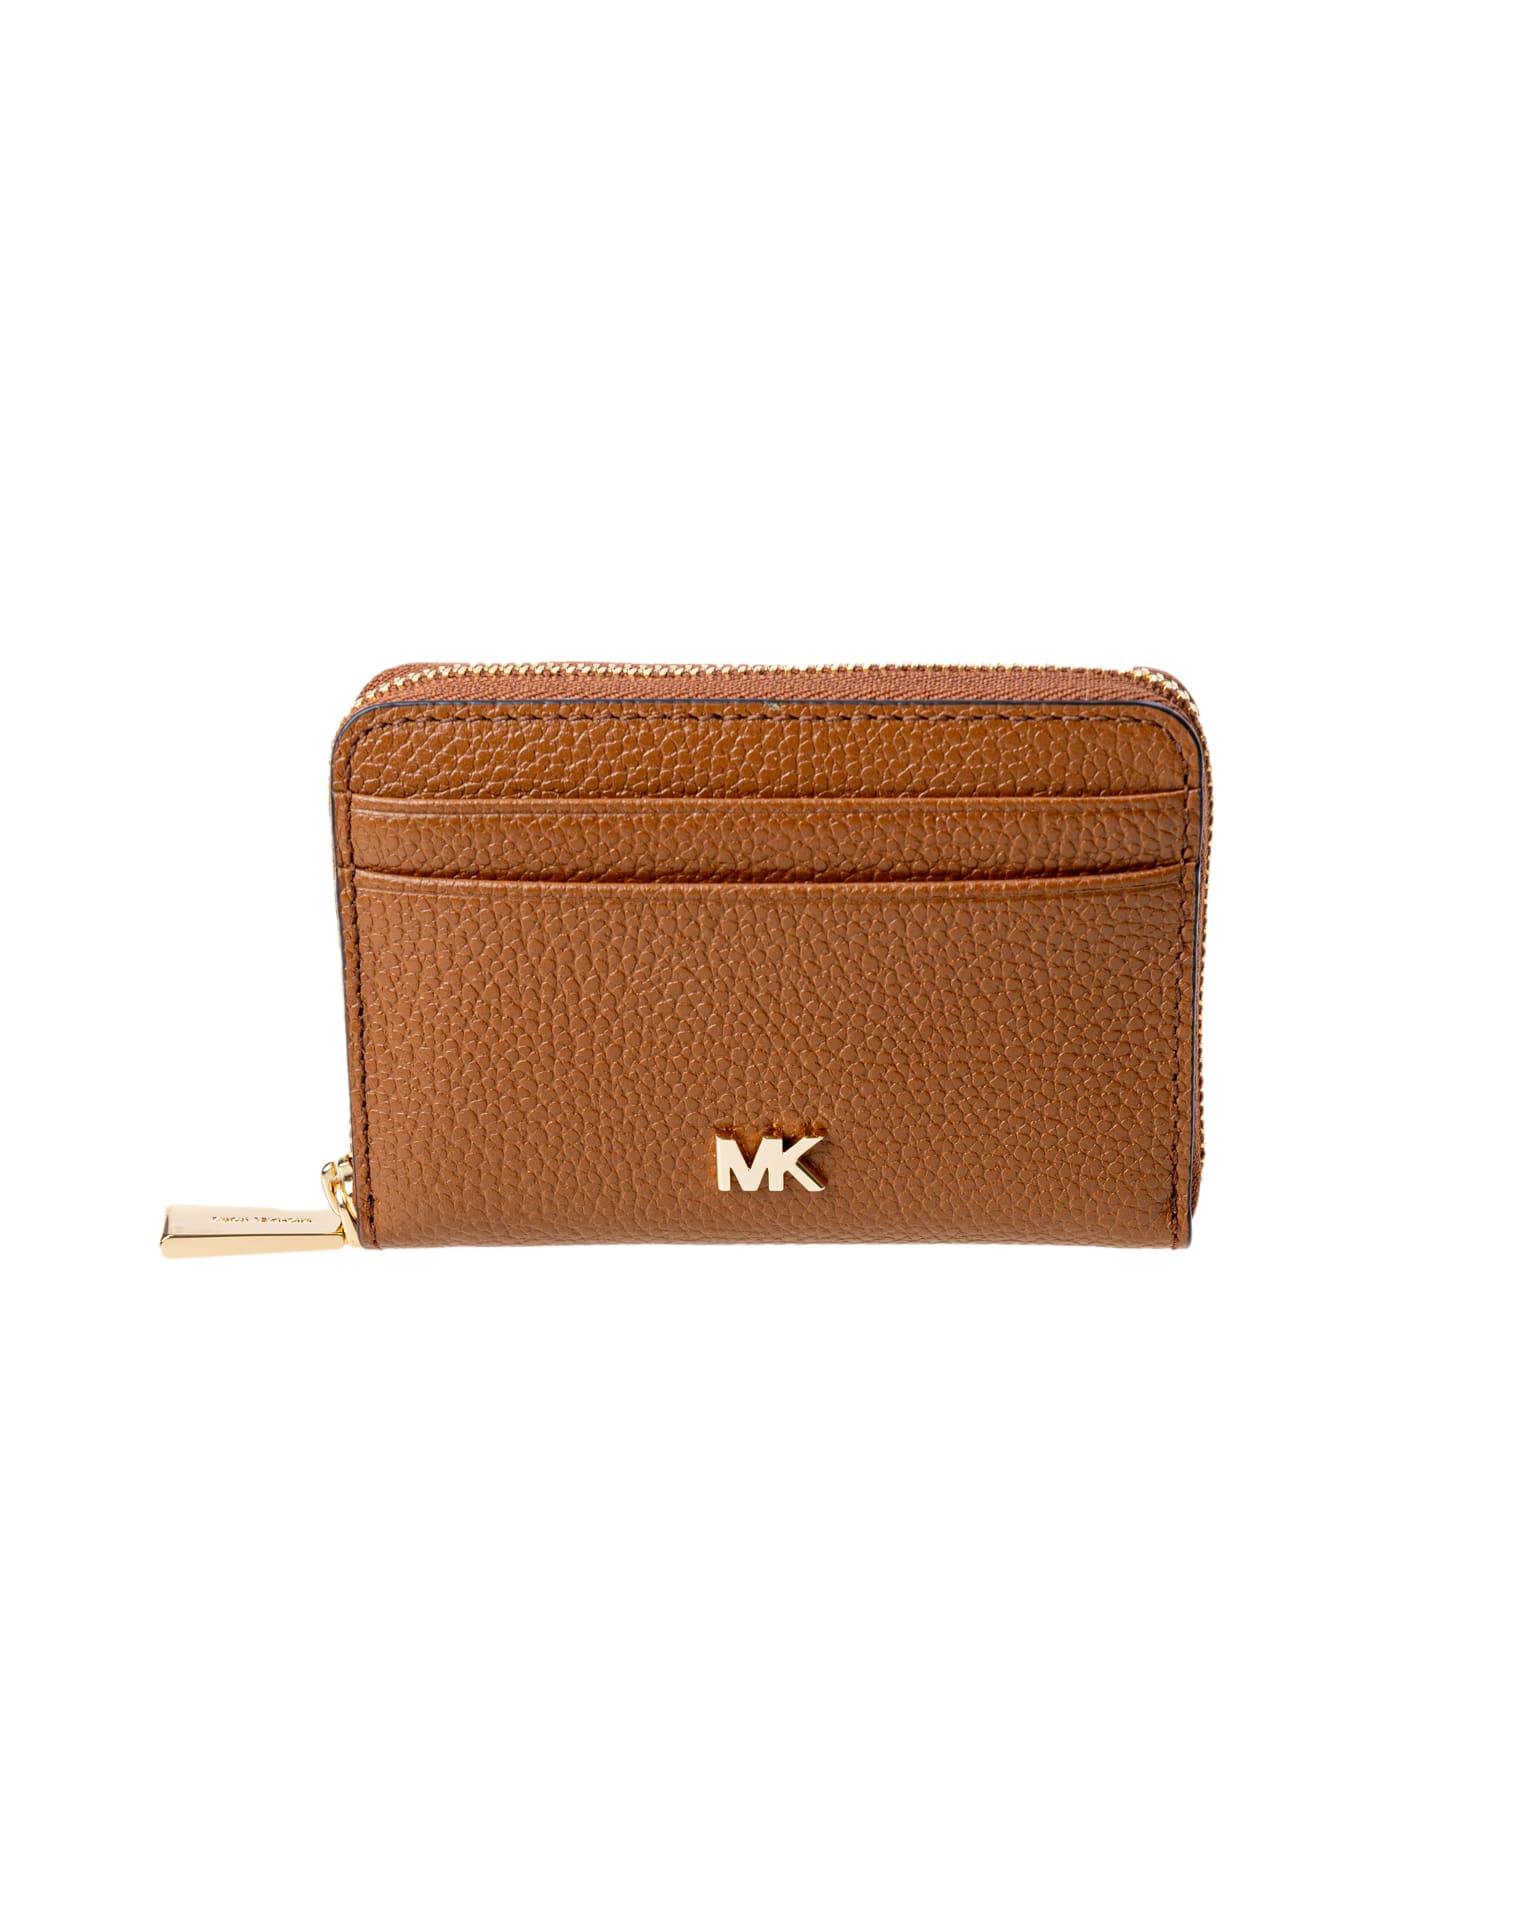 Michael Kors beige wallet / purse